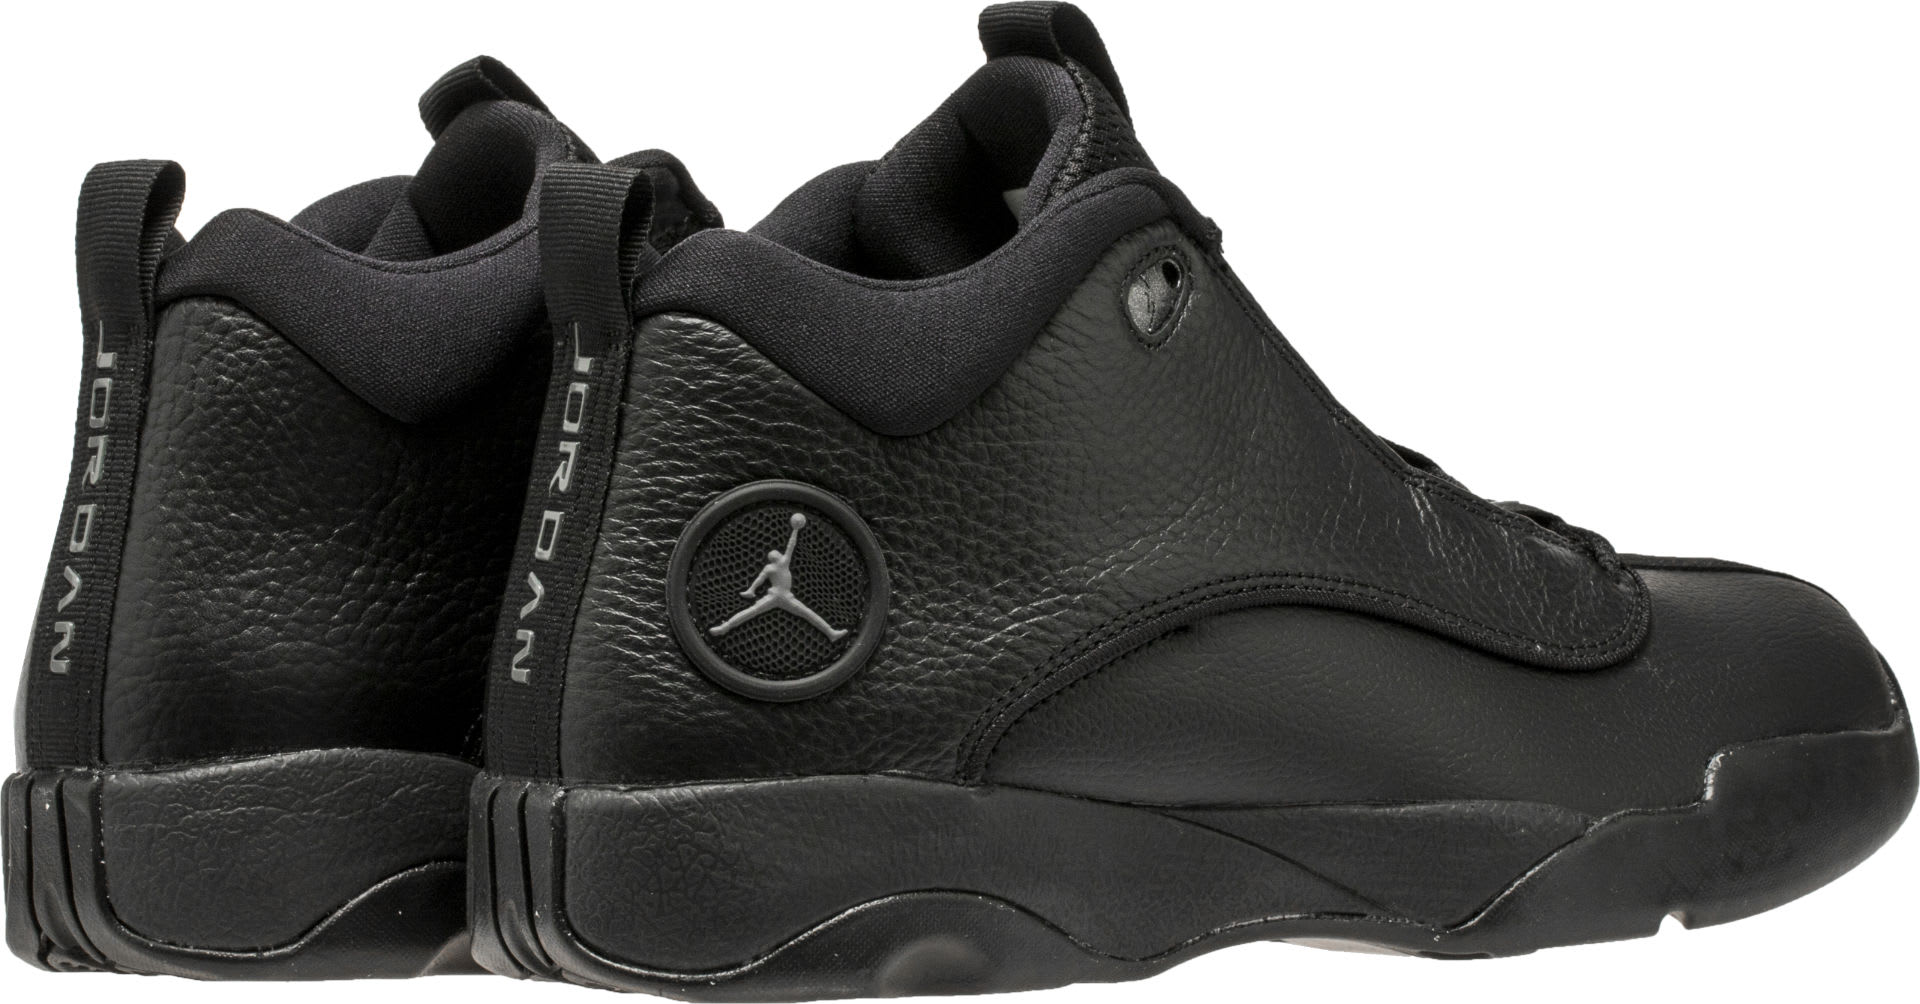 Jordan Pro Quick 2017 Black Grey Release Date Heel 932687-011